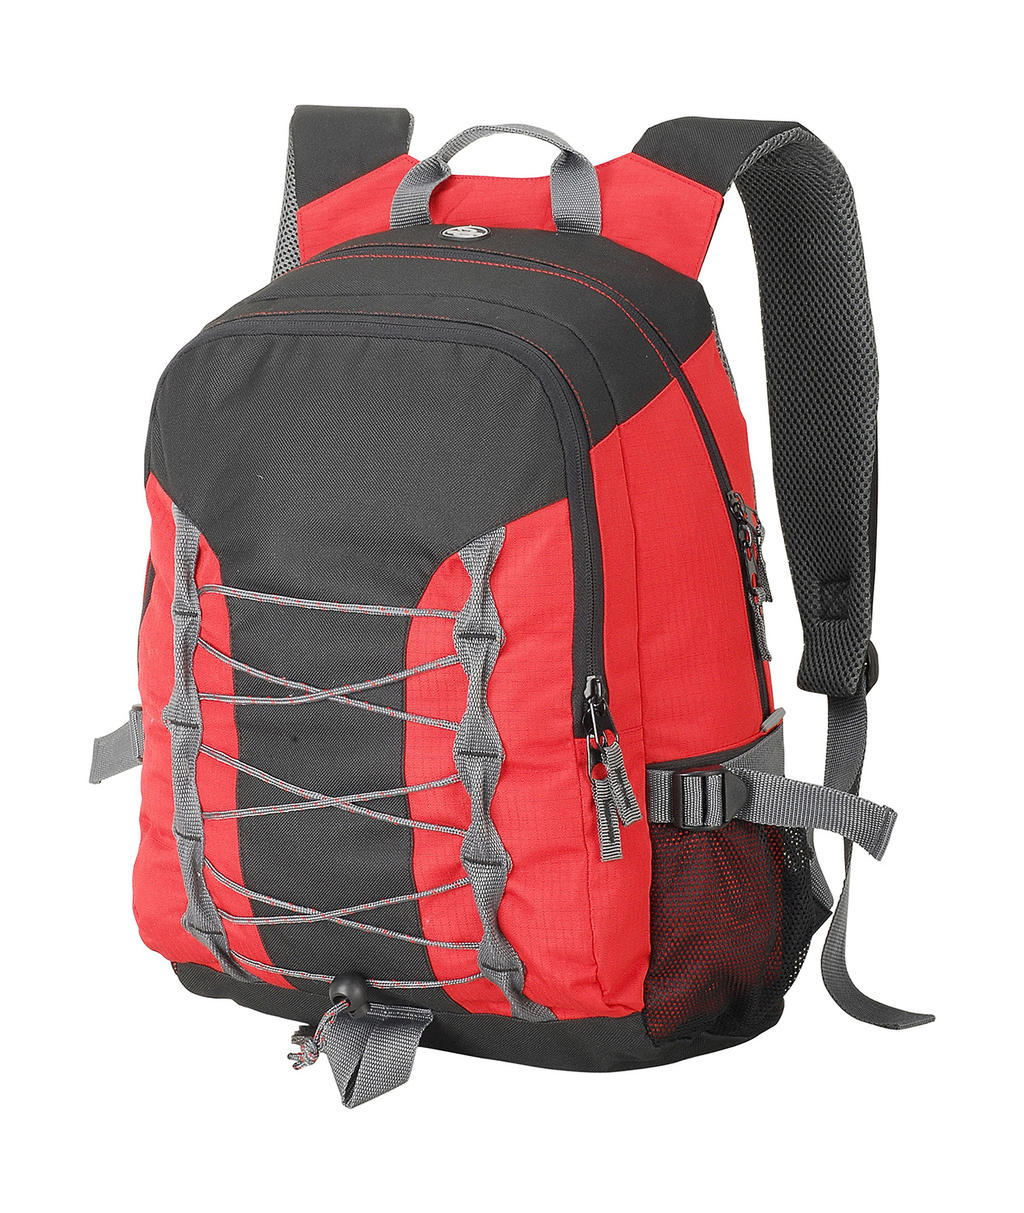  Miami Backpack in Farbe Red/Black/Dark Grey